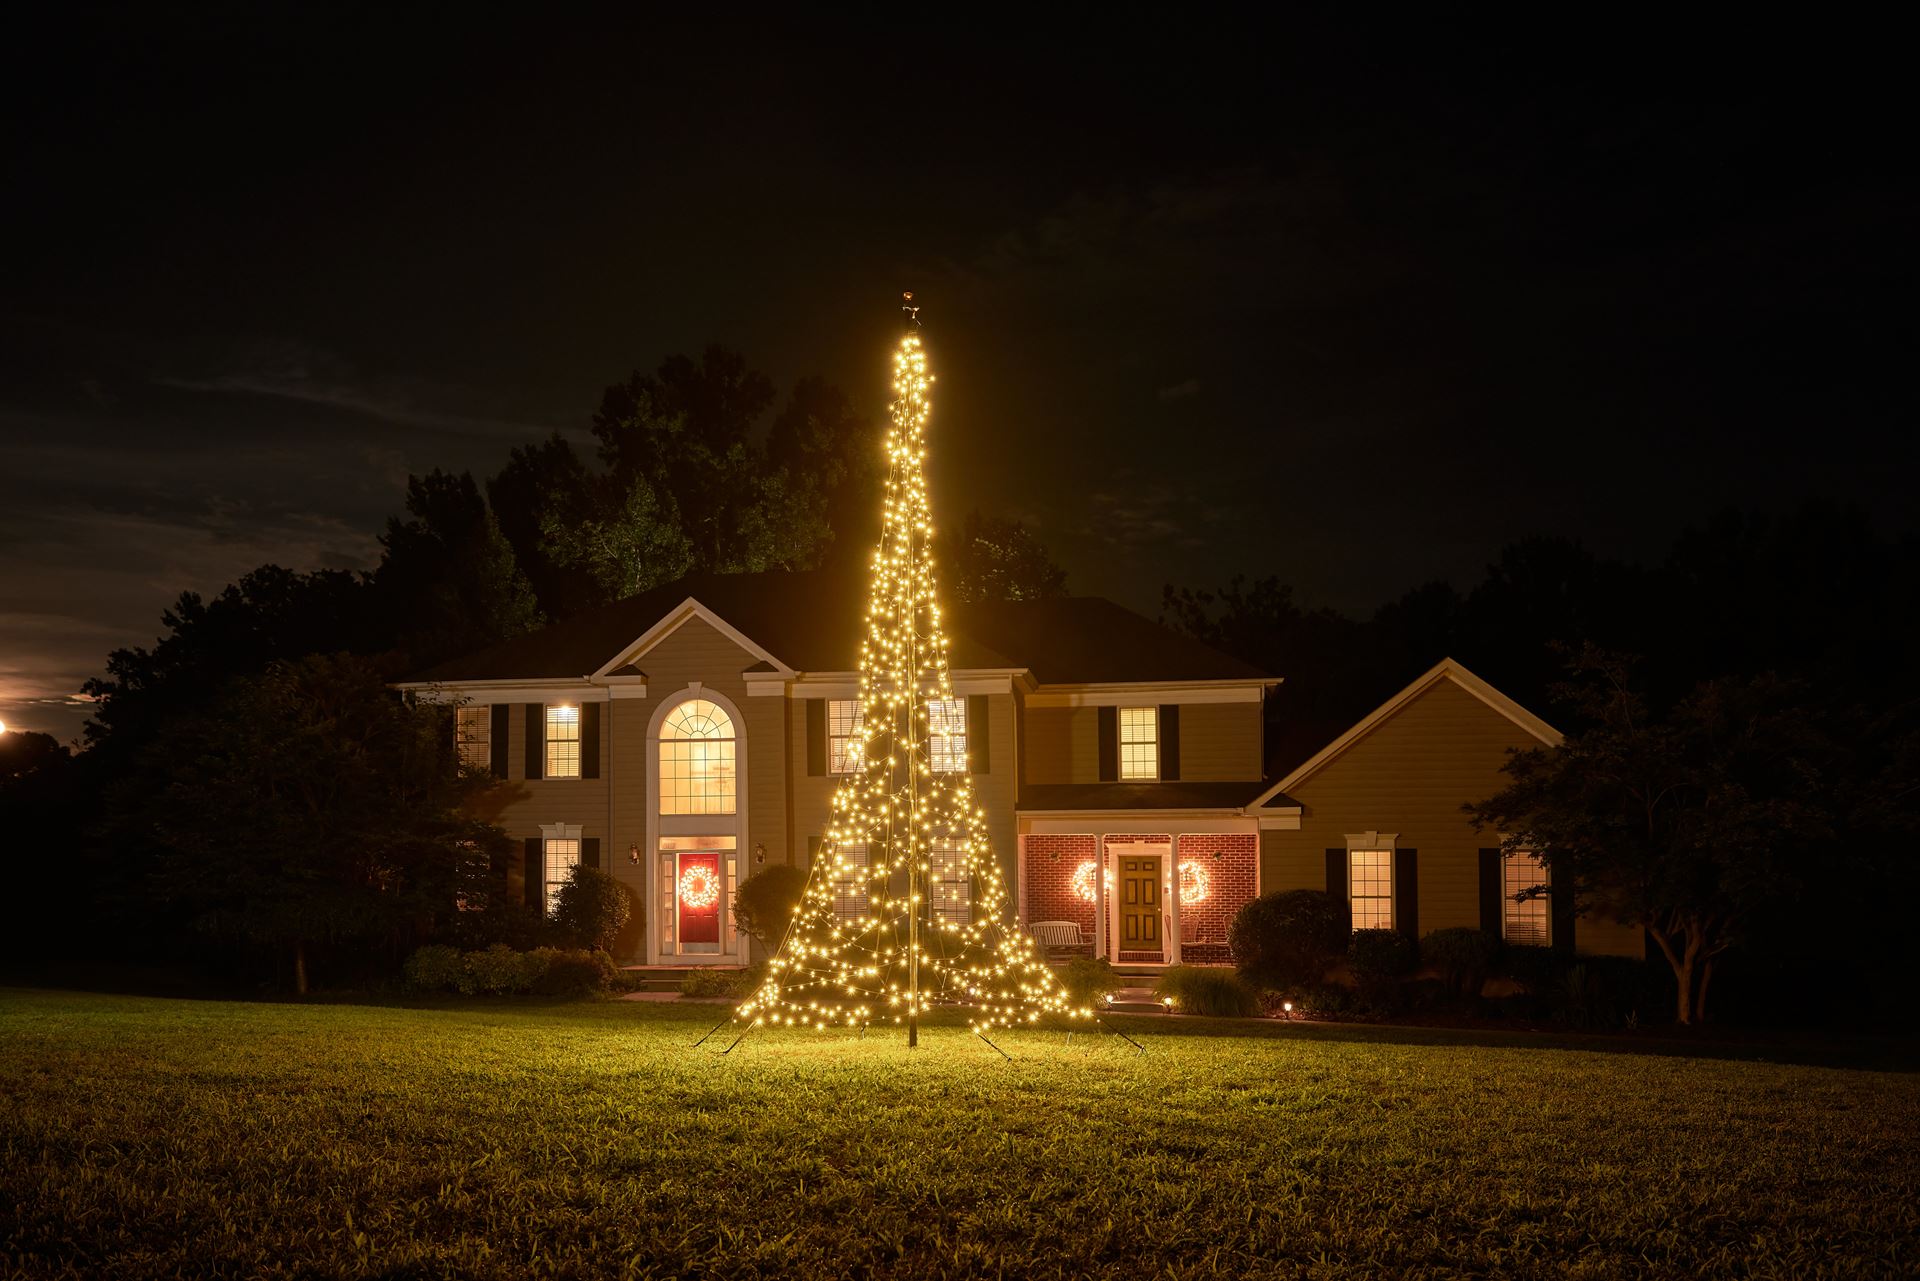 Fairybell-kerstverlichting-kerstboom-6m-hoog-900-LED-lampjes-in-warmwitte-kleur-voor-buiten